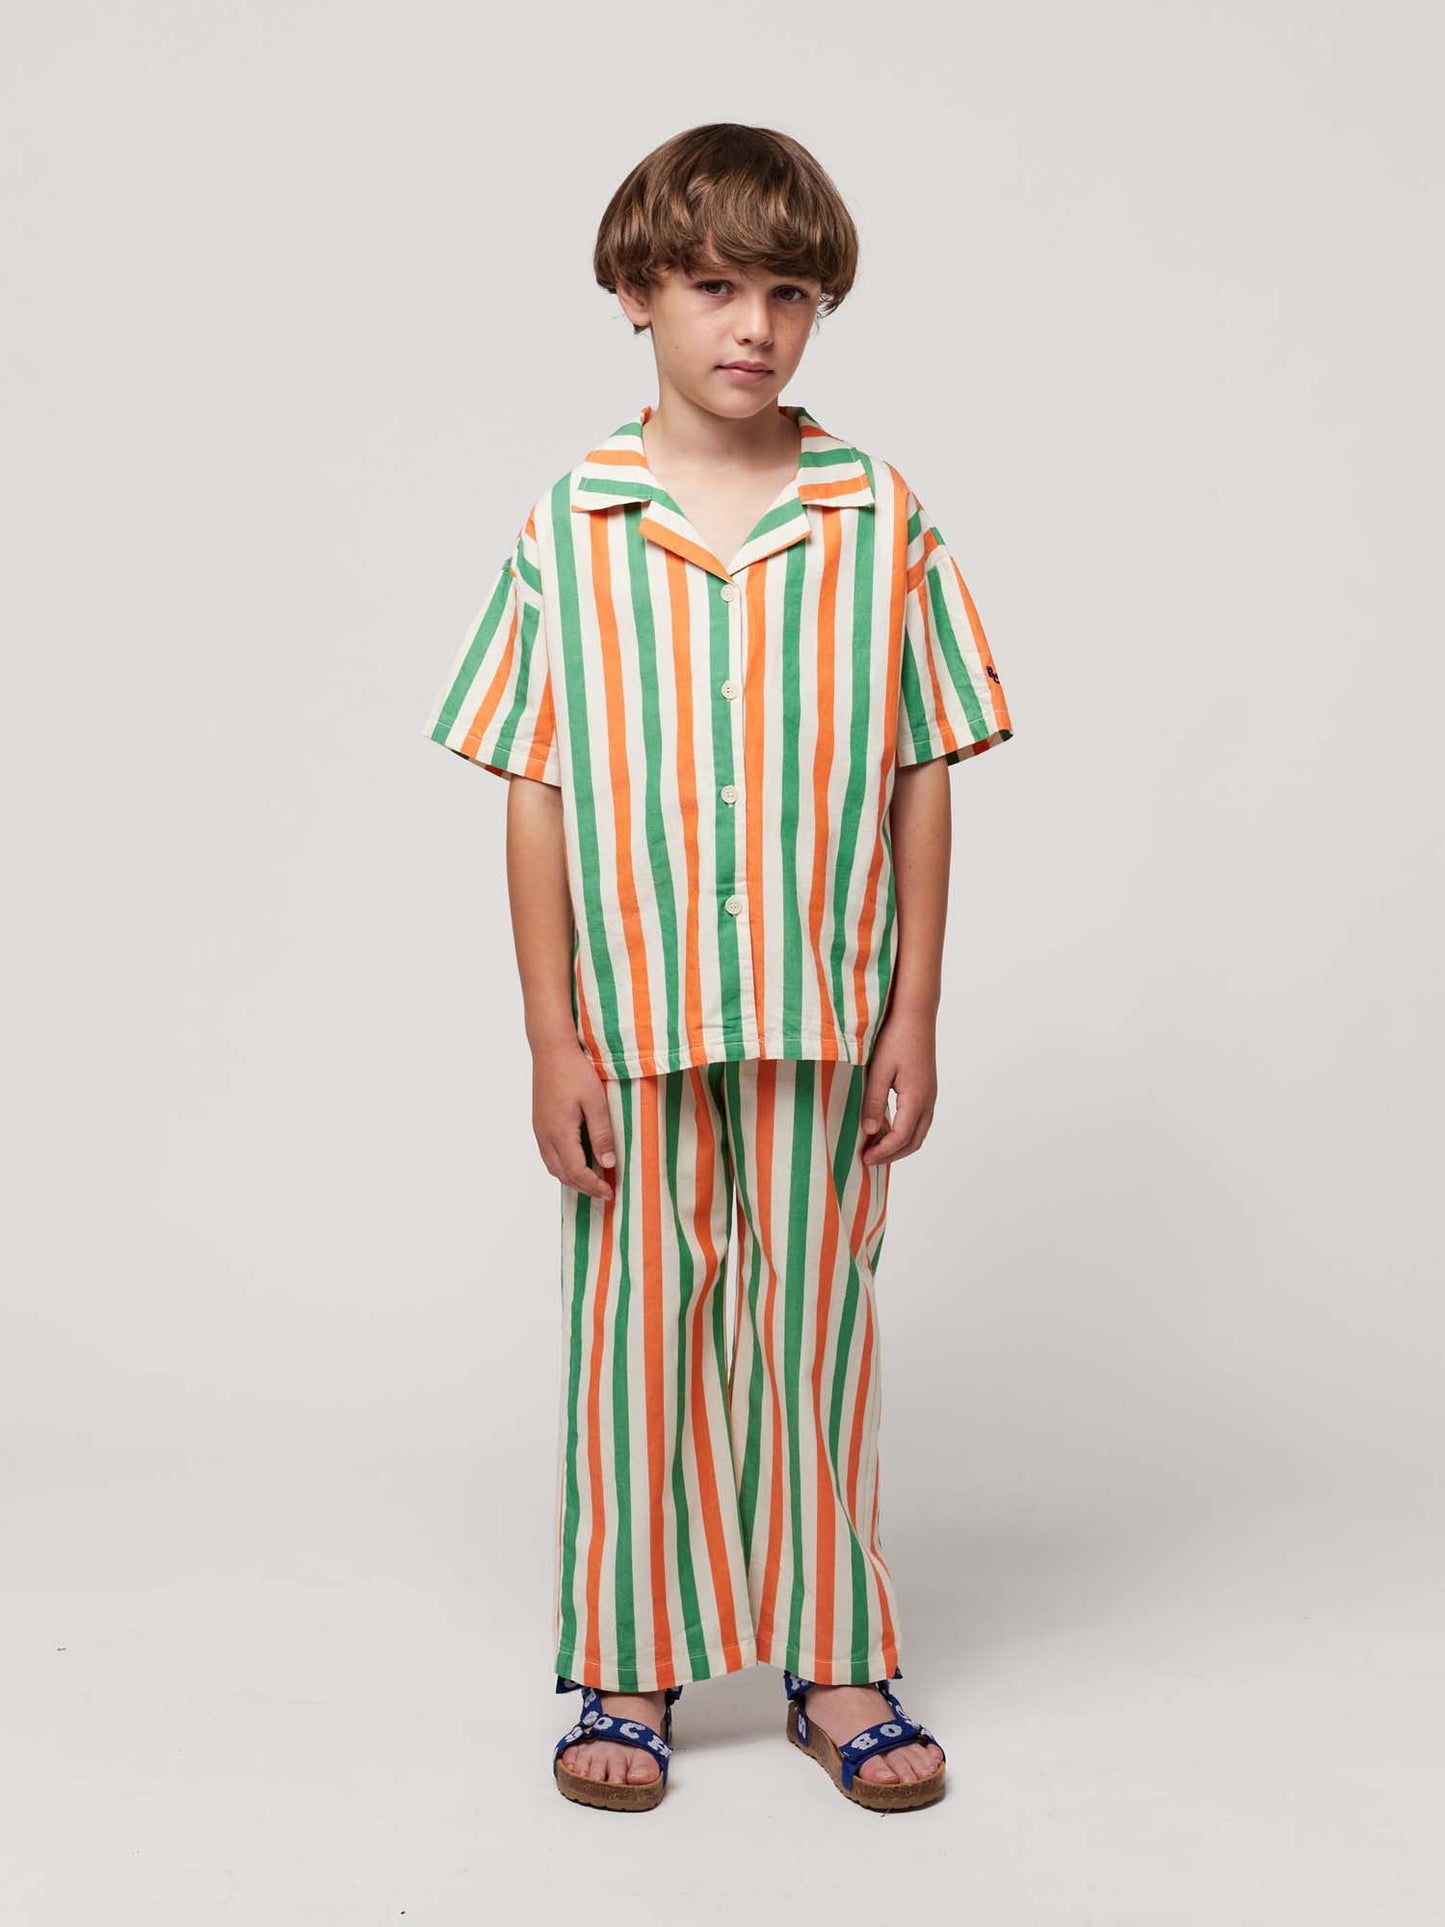 Vertical Stripes Woven Shirt